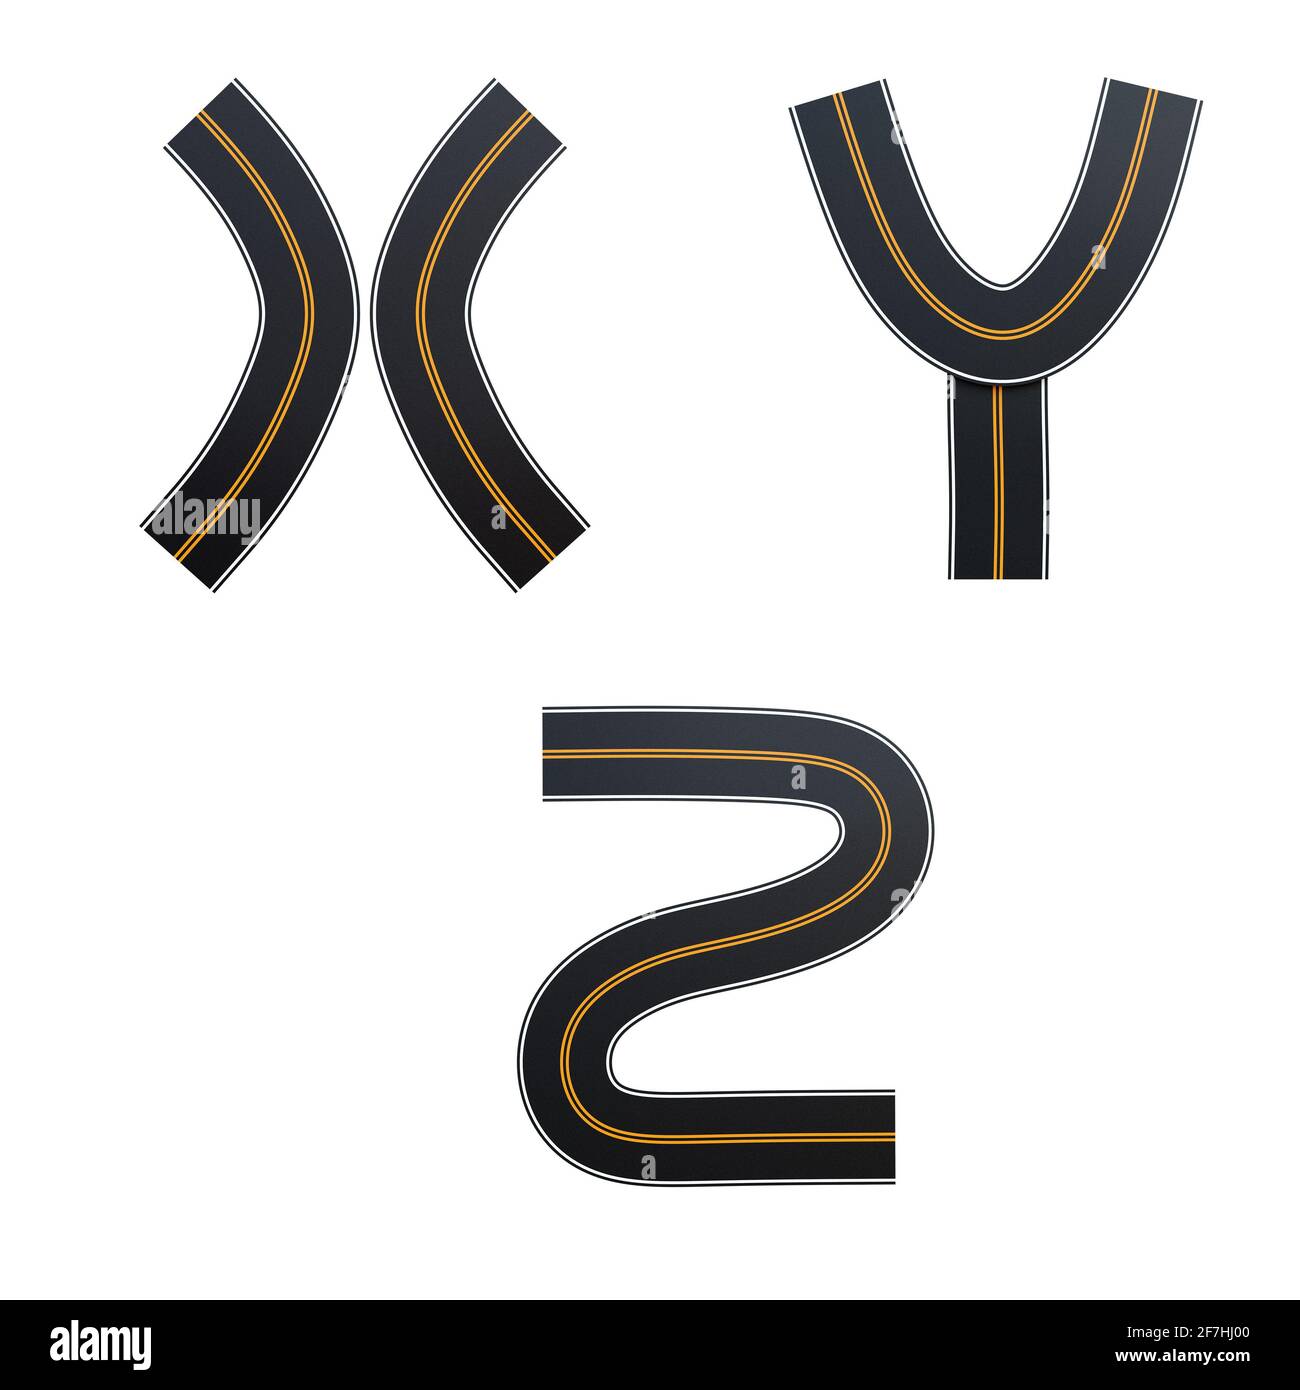 Rappresentazione 3D dell'alfabeto delle strade asfaltate - lettere X-Z Foto Stock